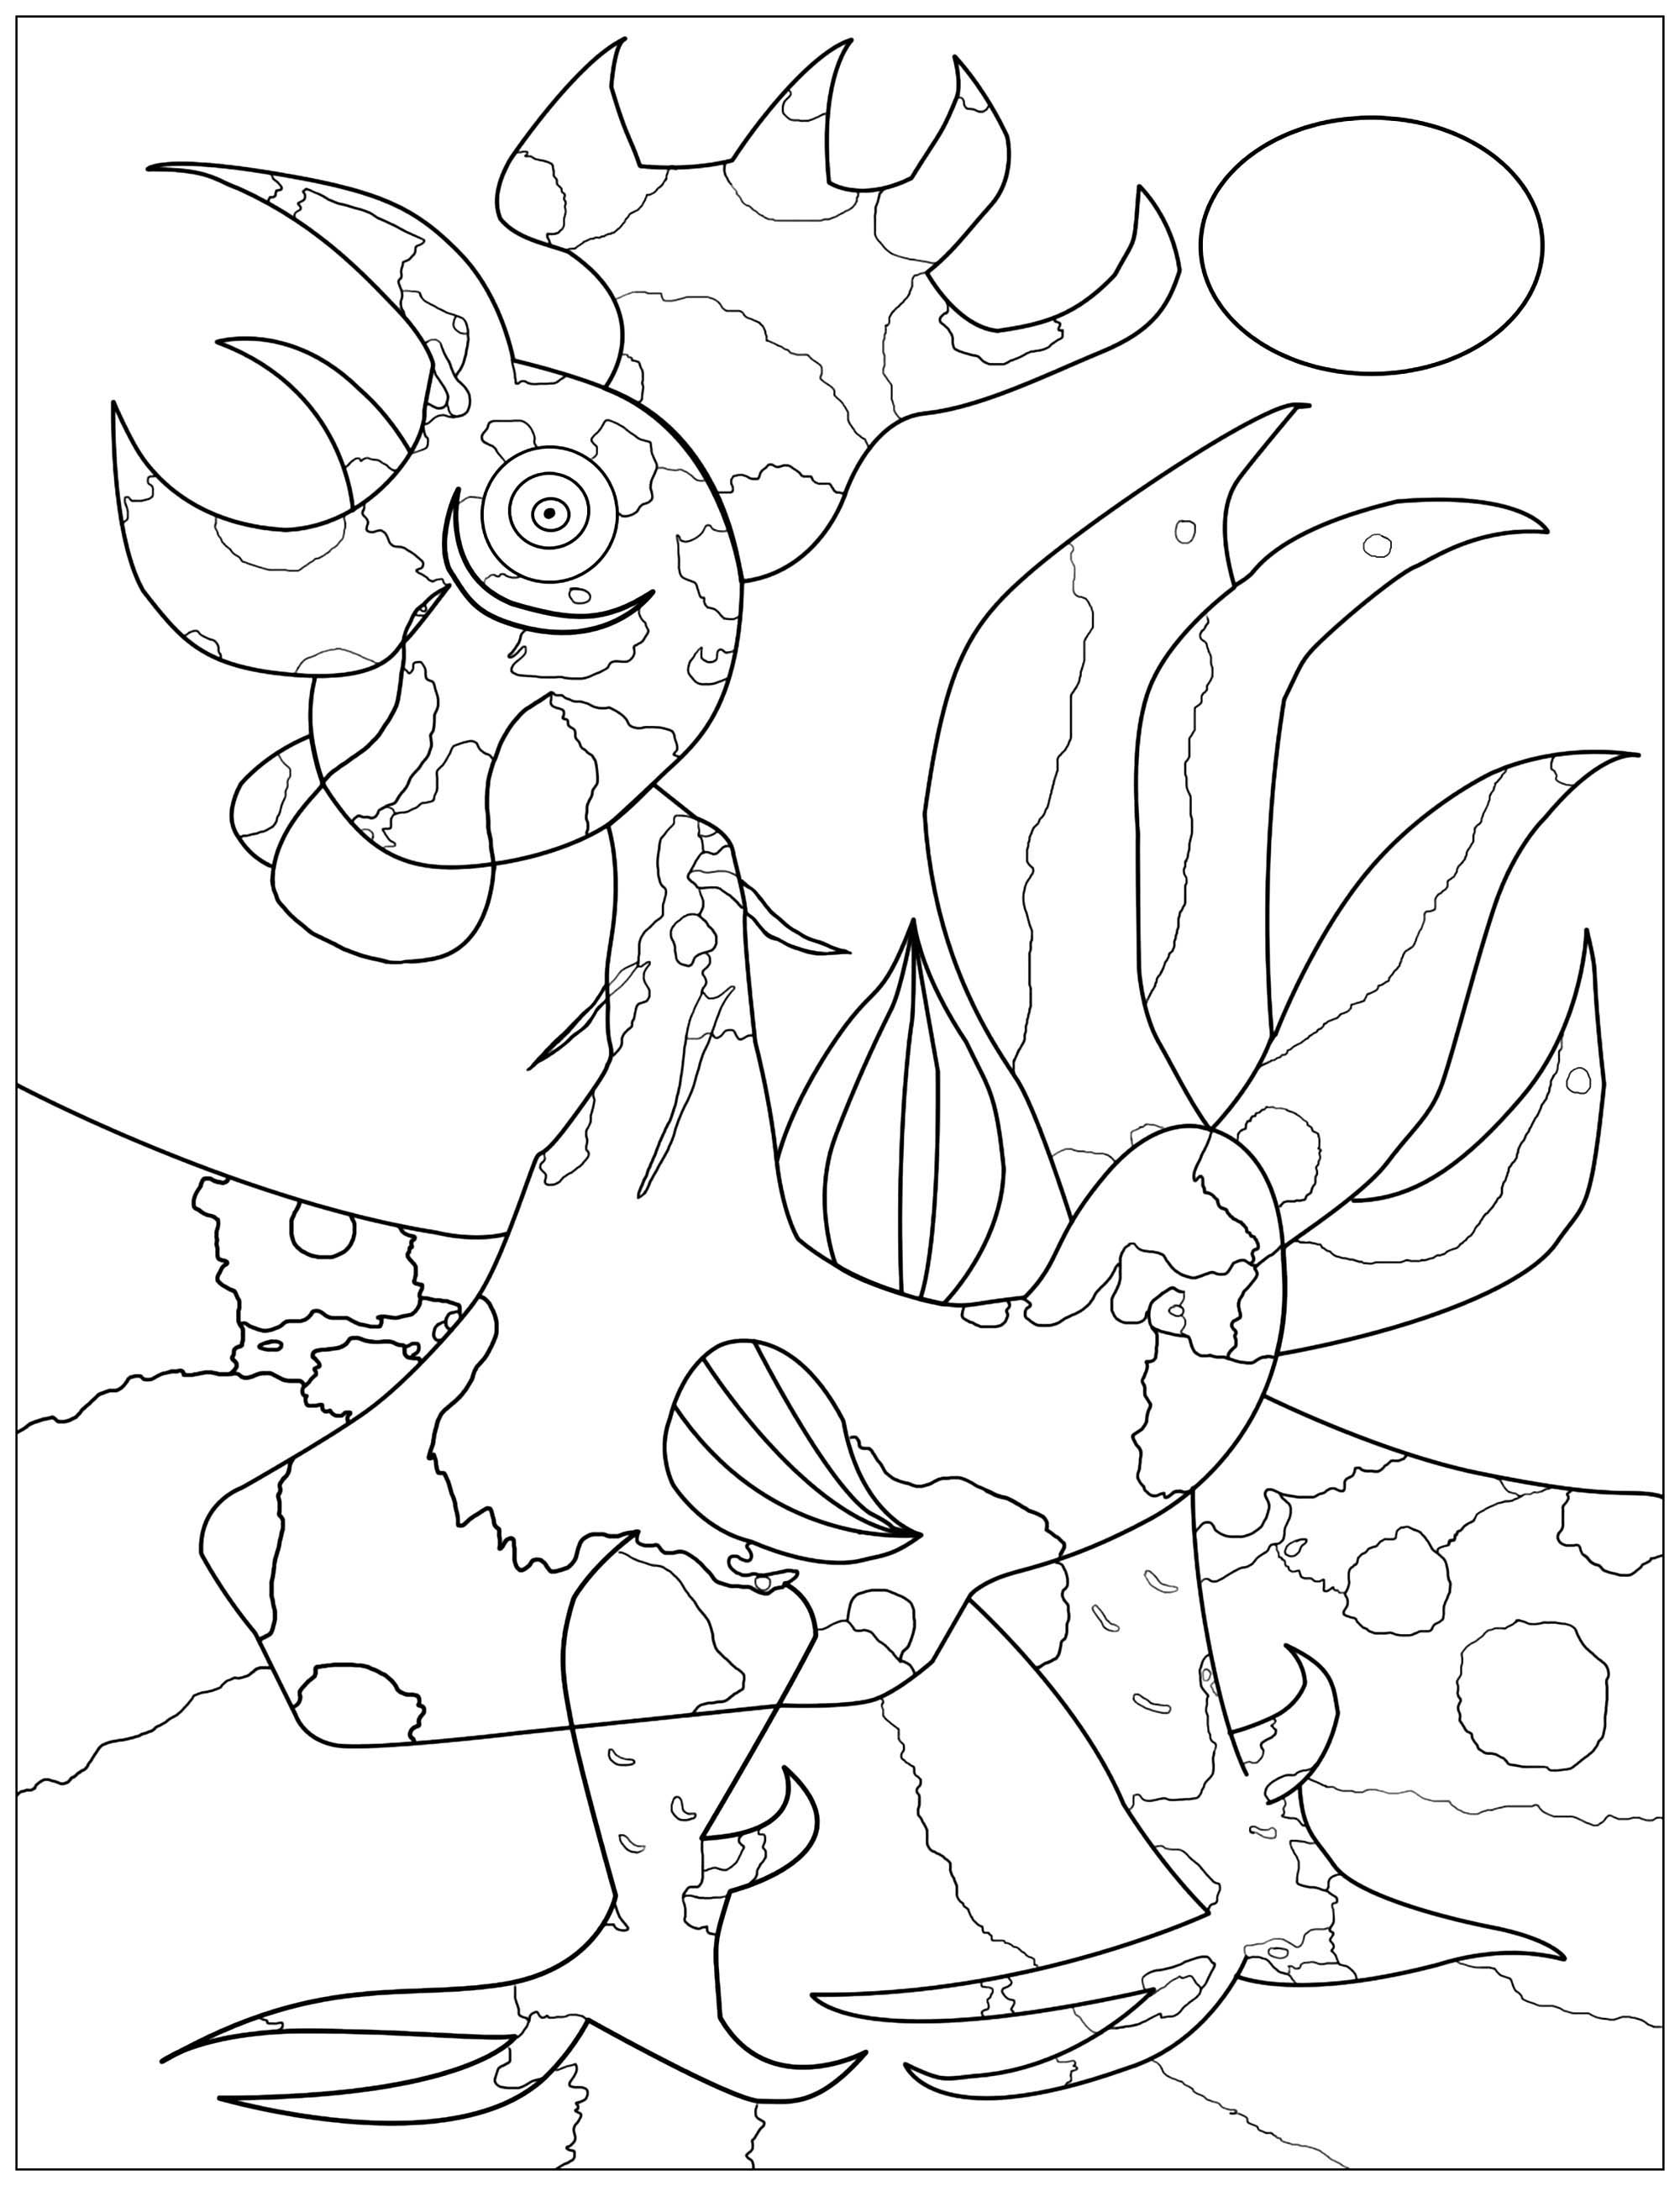 Página para colorir inspirada num quadro de Joan Miró: Le coq (O galo) (1940)